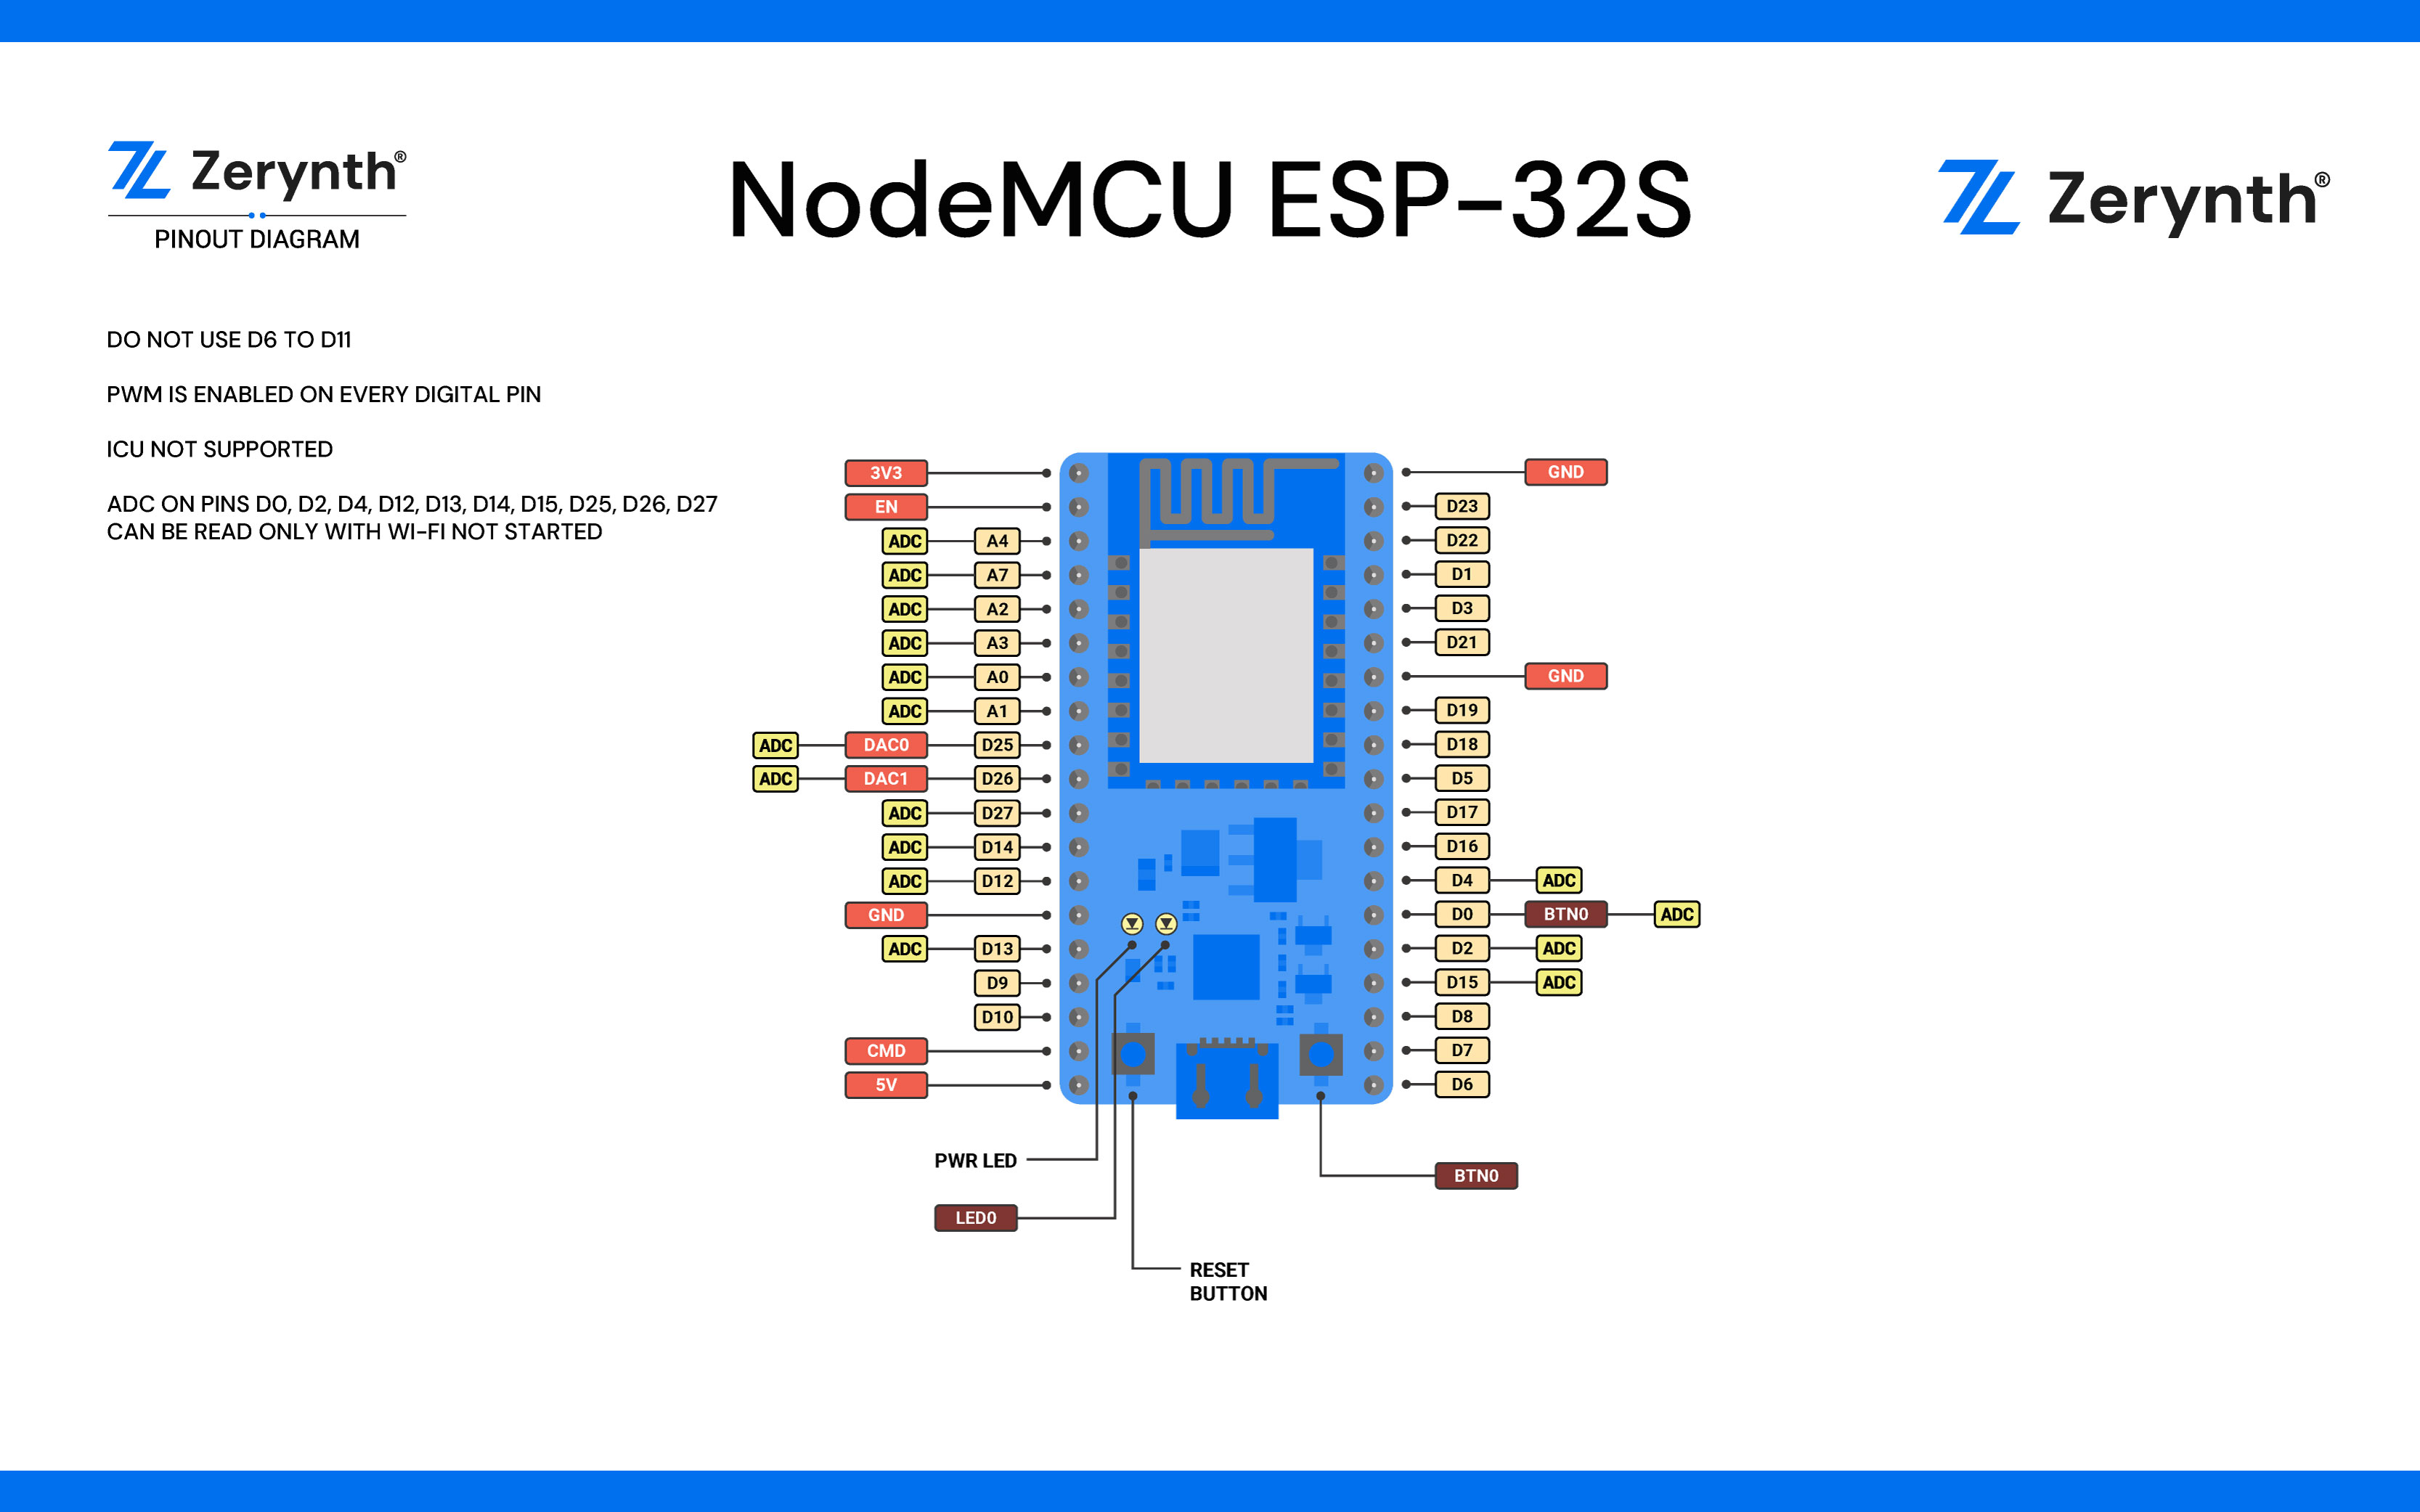 ESP32-Ethernet-Kit V1.2 Getting Started Guide - ESP32 - — ESP-IDF  Programming Guide v5.2 documentation